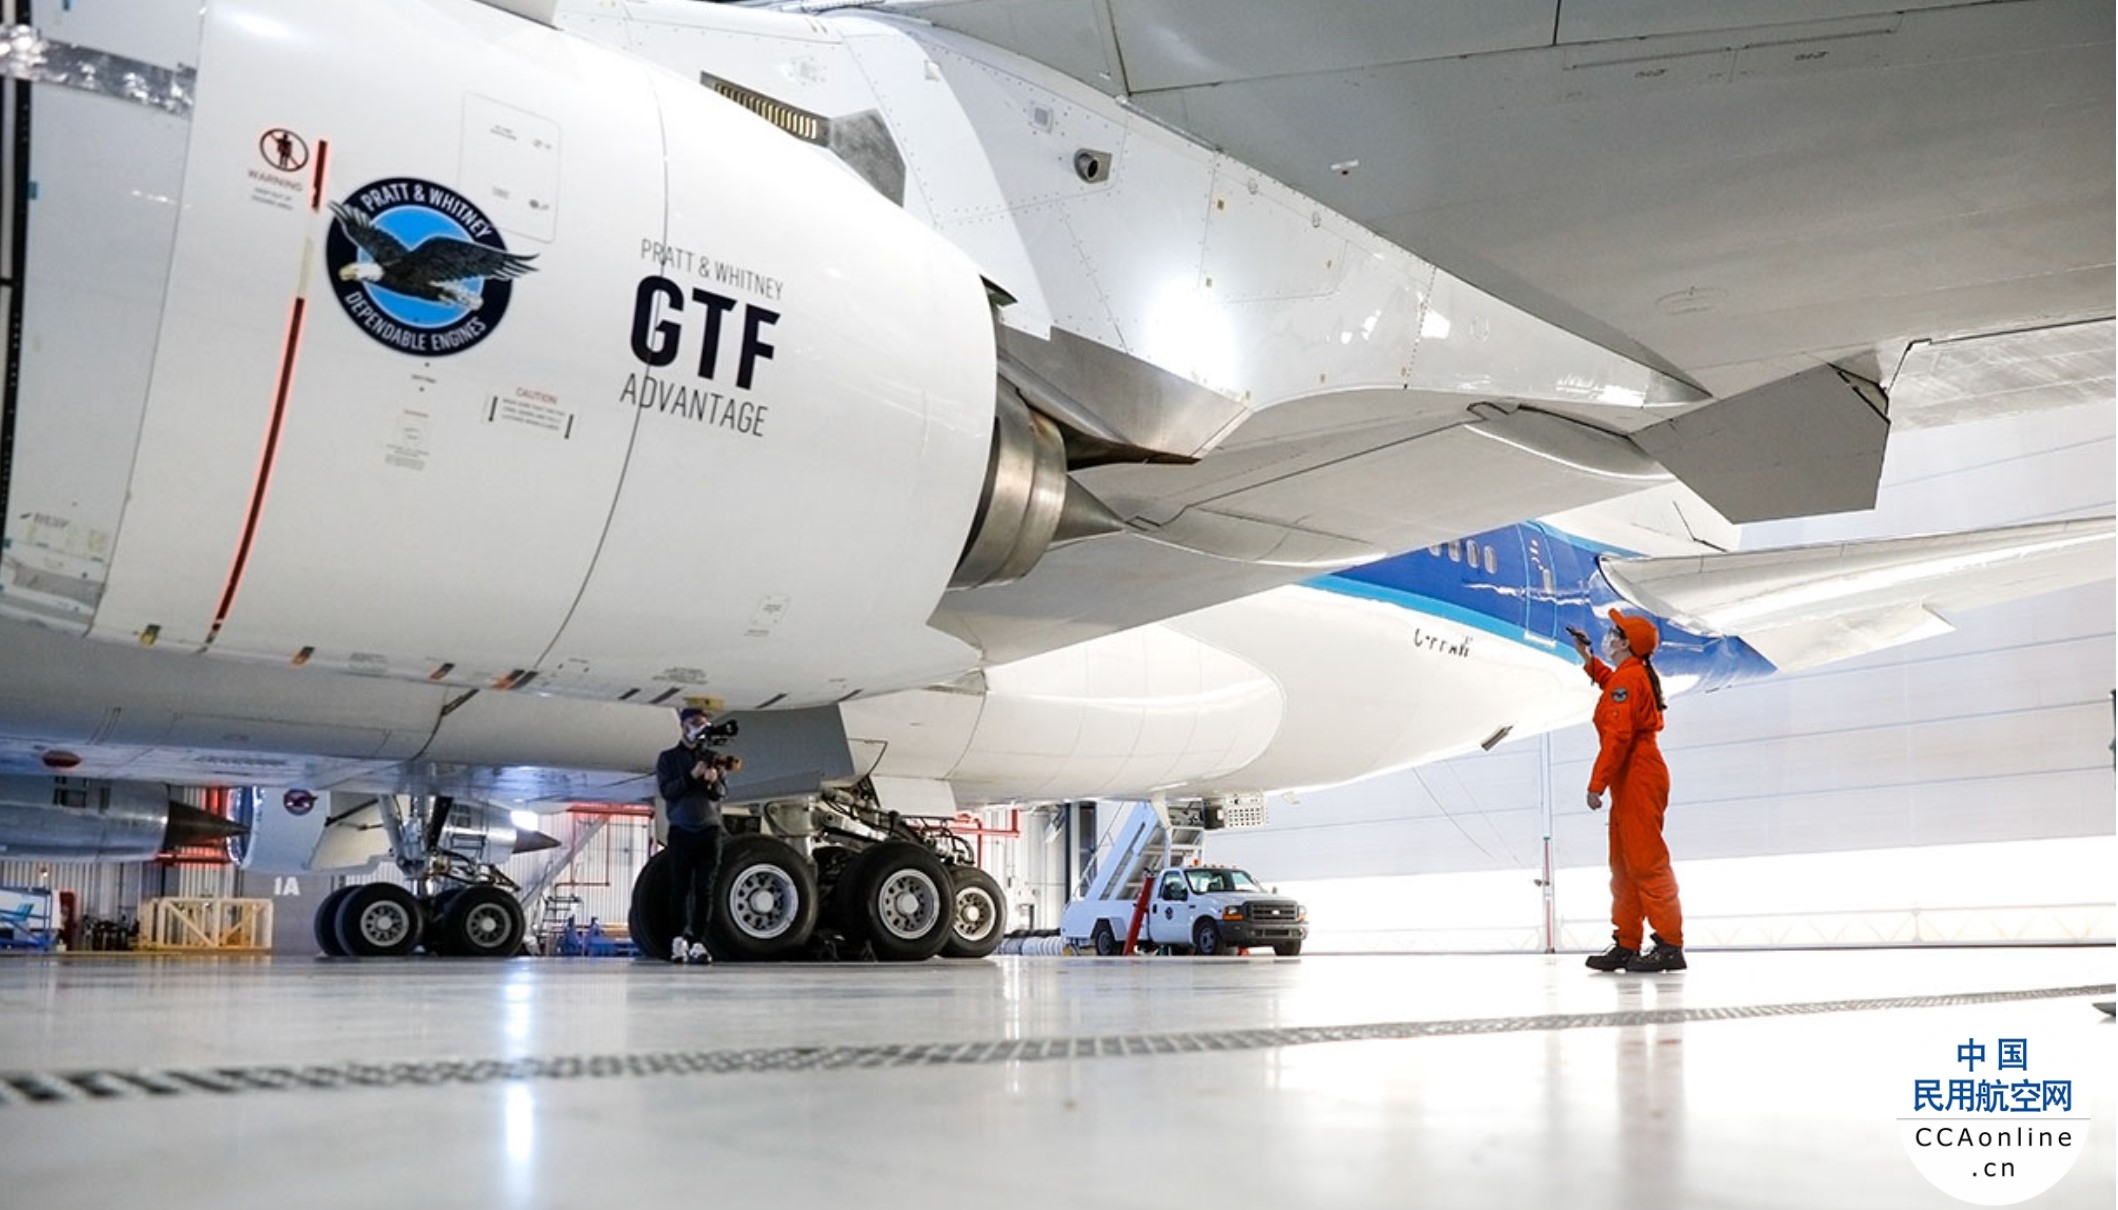 GTF发动机打造亚太地区可持续航空的未来